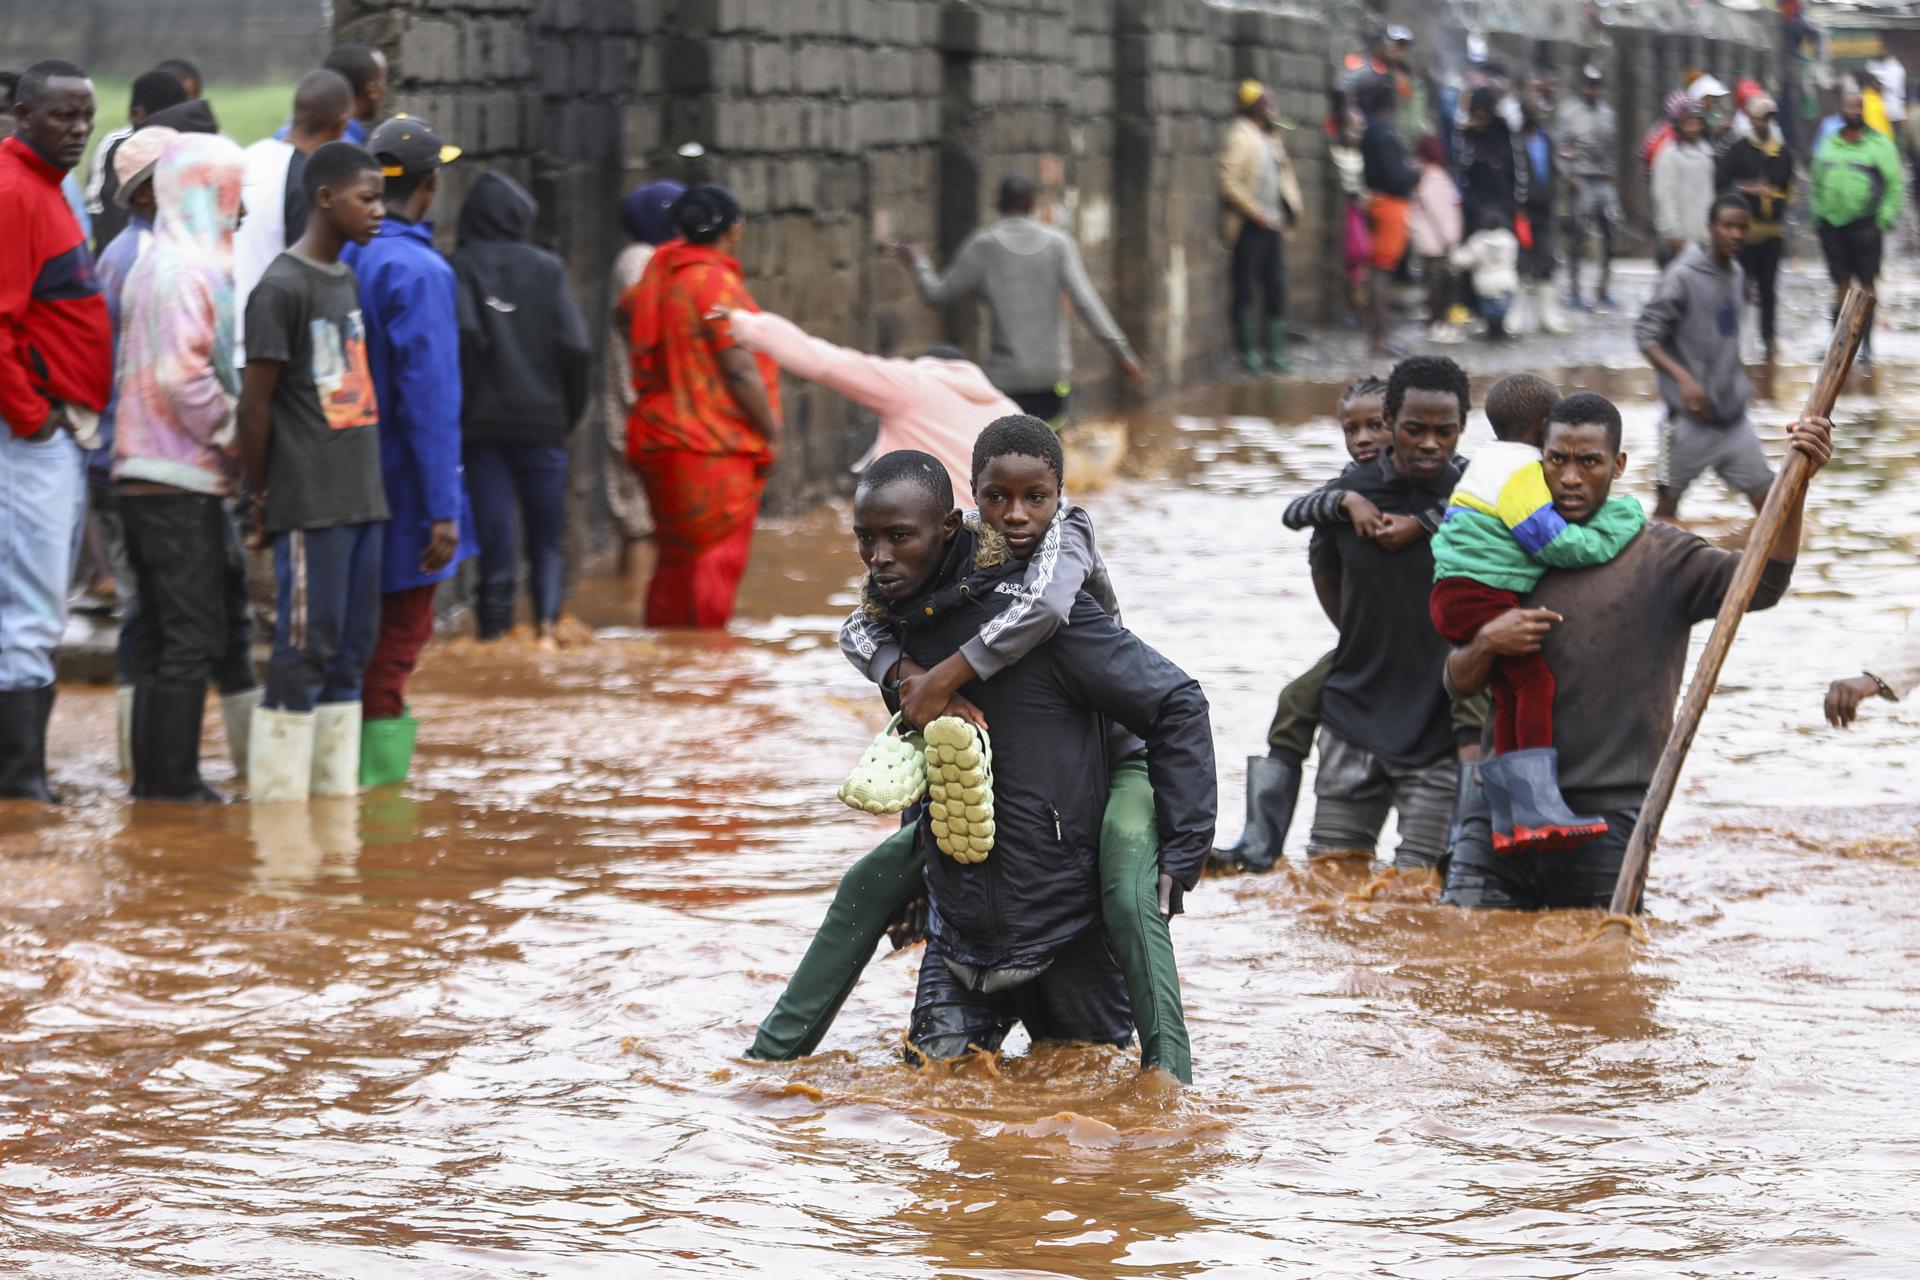 Residentes ayudan a damnificados por las inundaciones en Kenia. (Inundaciones, Kenia) EFE/EPA/DANIEL IRUNGU